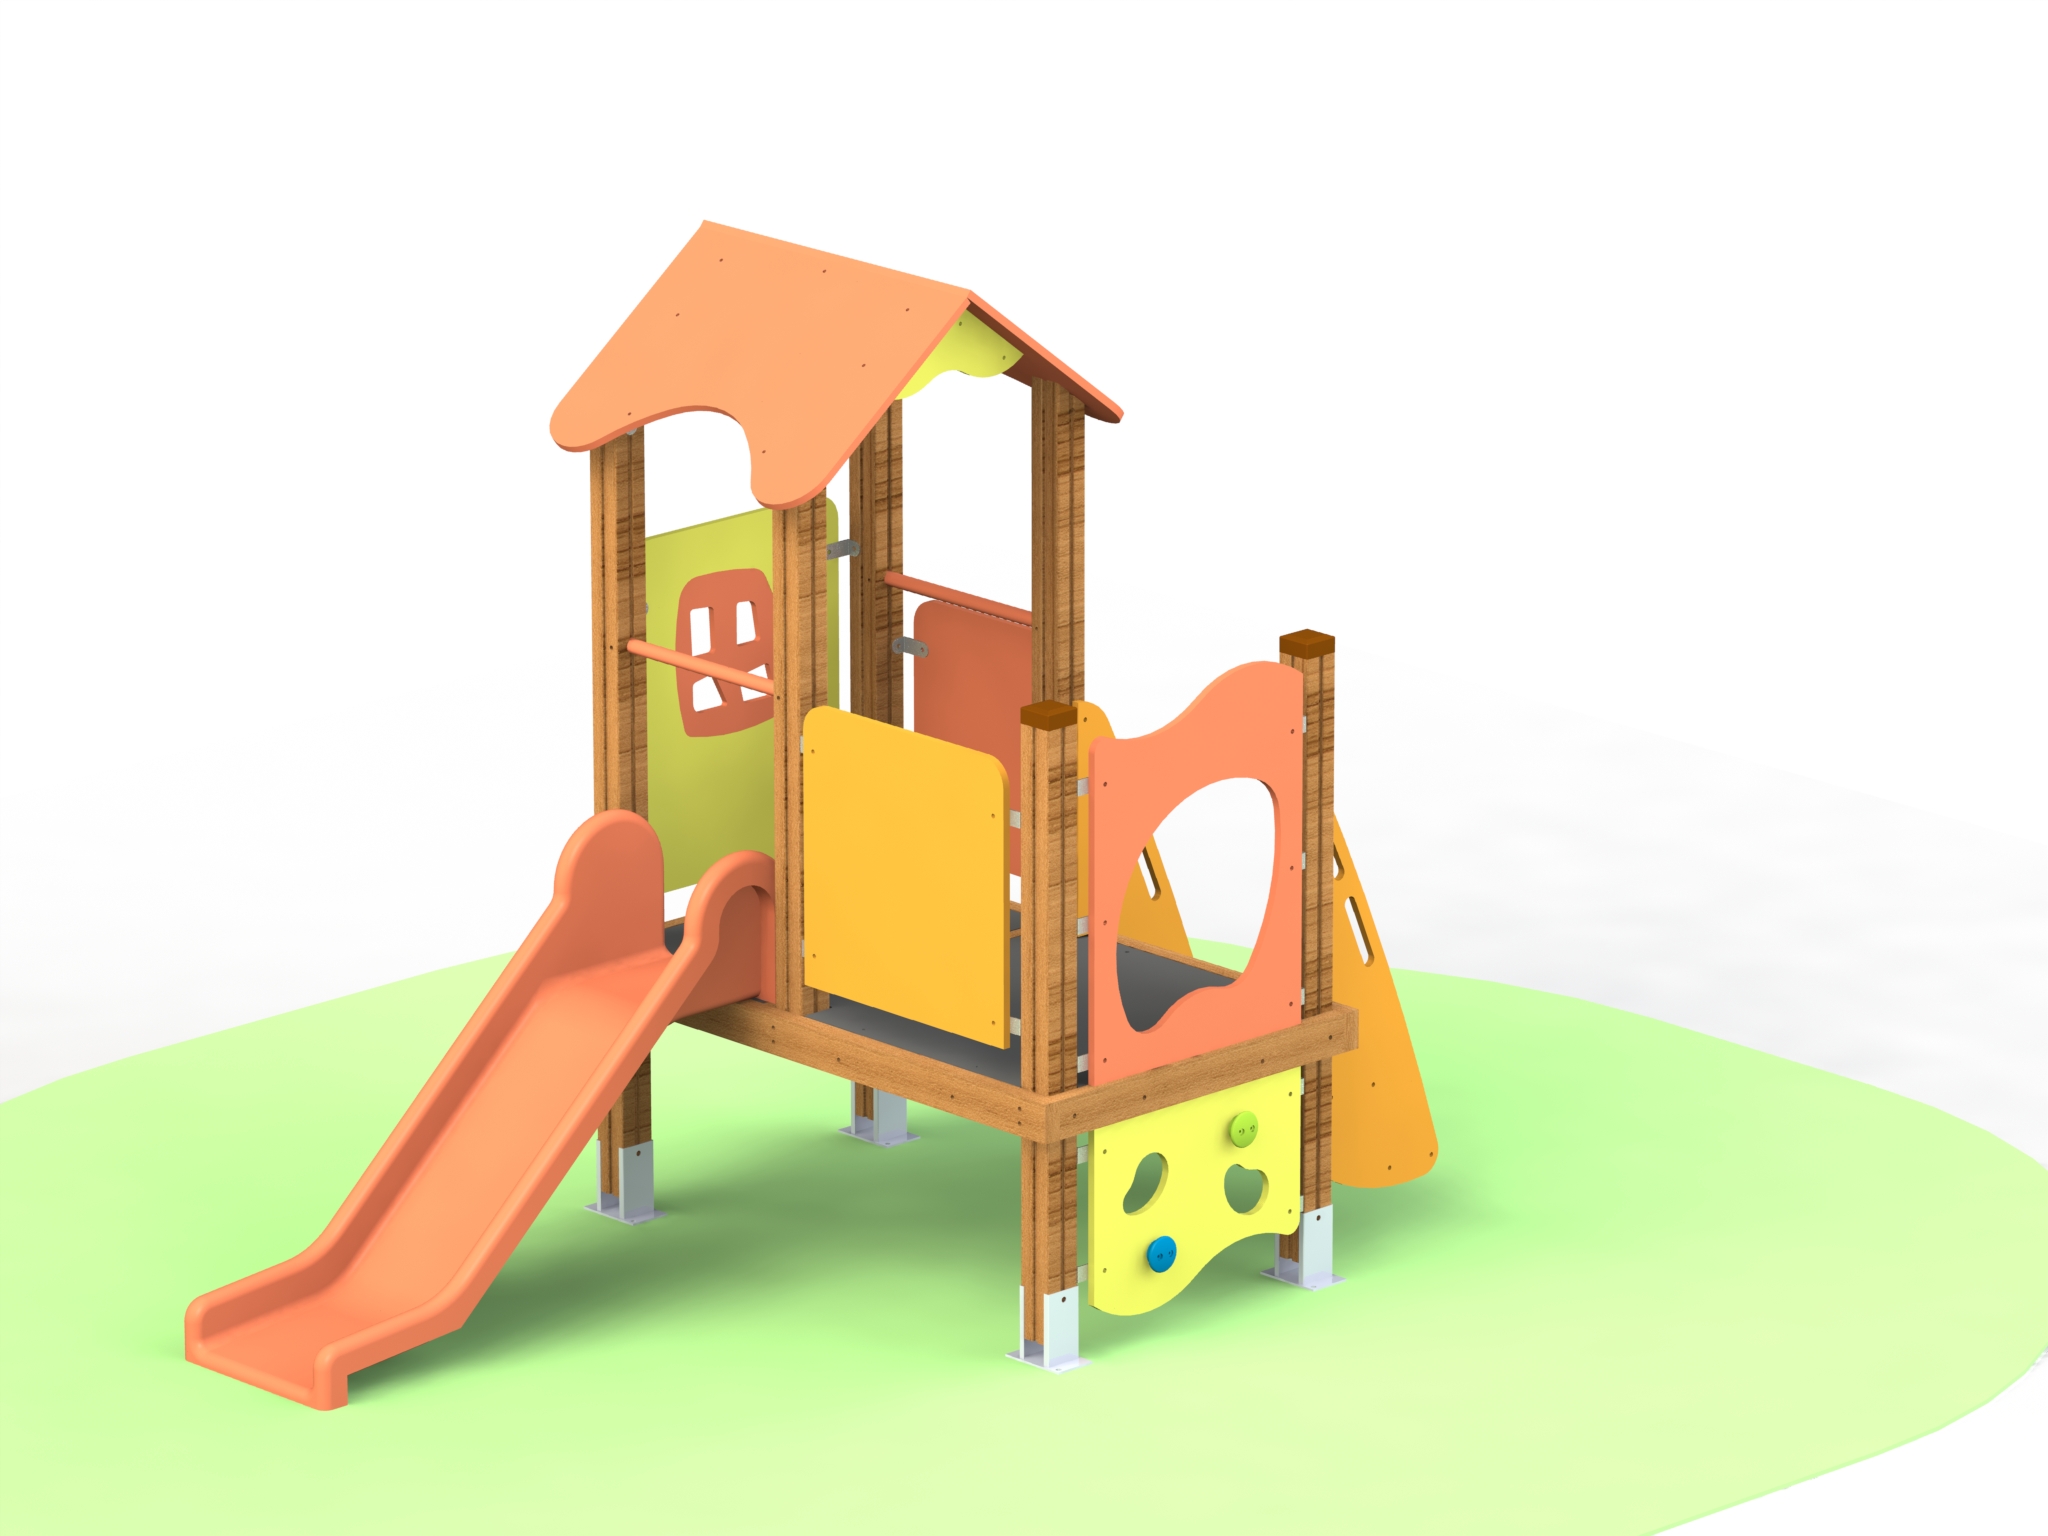 Снимка на продукта: Комбинирано детско съоръжение, модел КД69